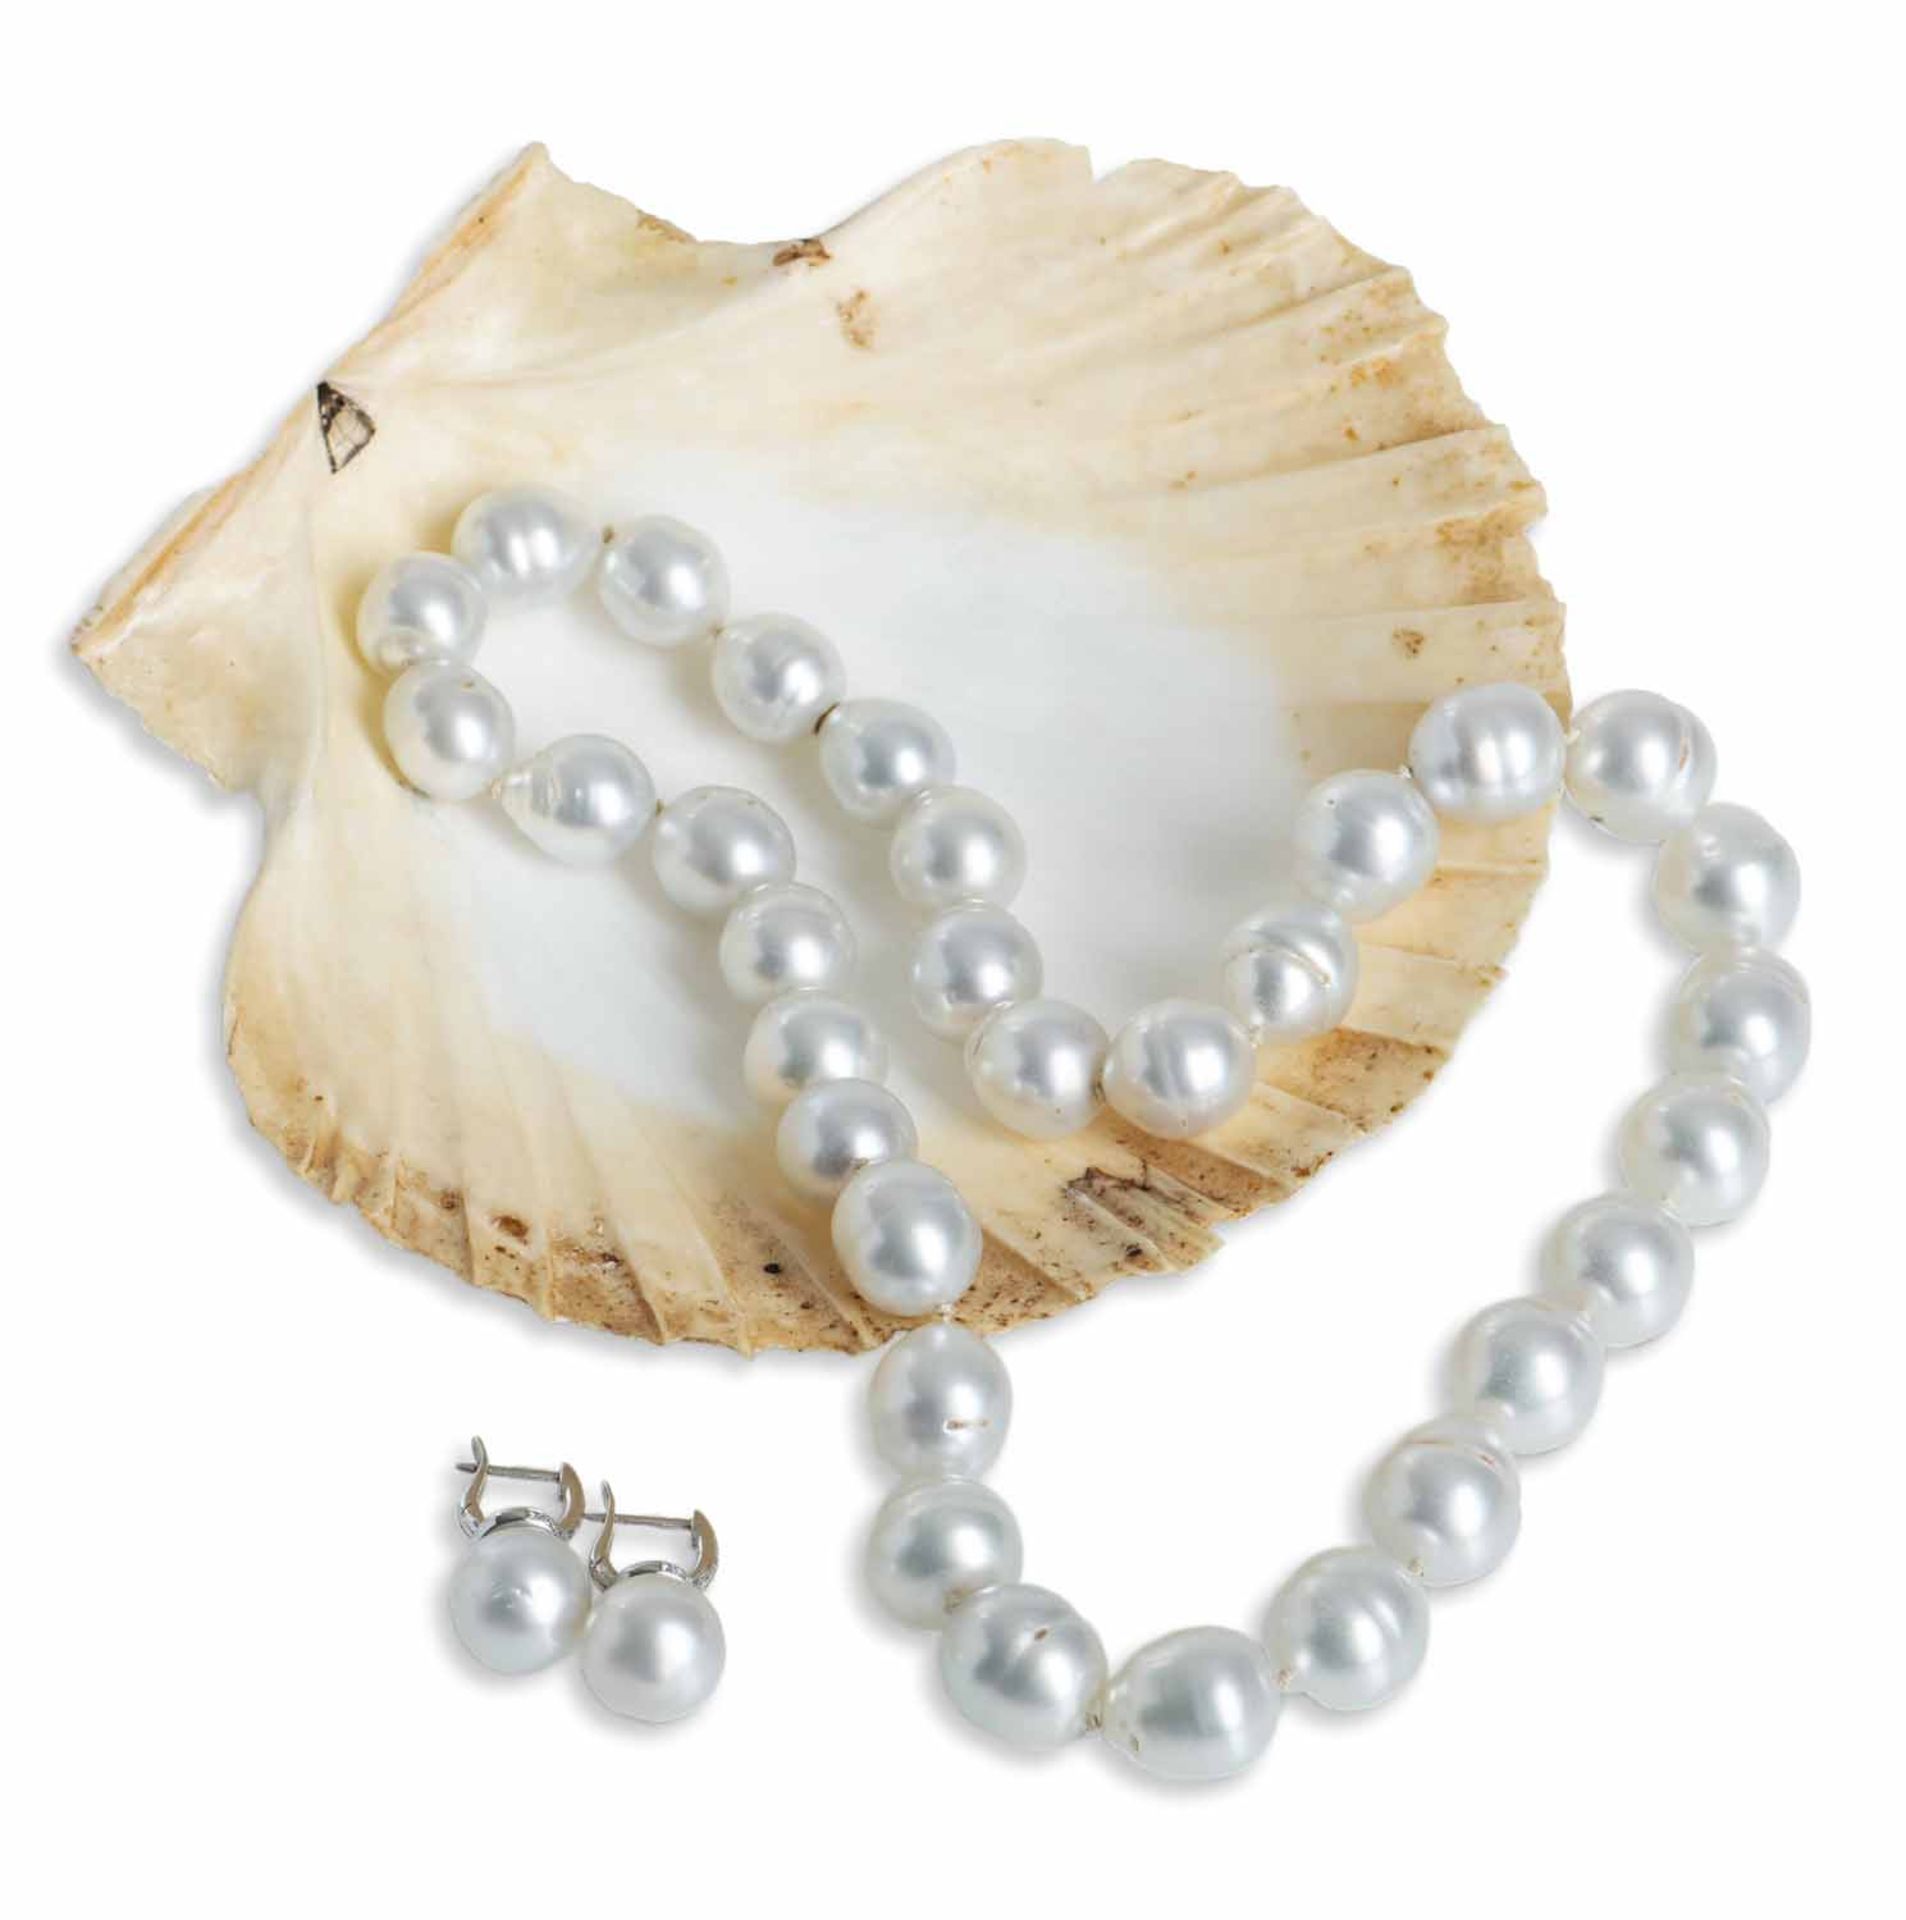 Südsee-Perlenkette und Paar OhrringeL. 2,3/44,5 cmCollier aus 31 leicht barocken, silberweißen